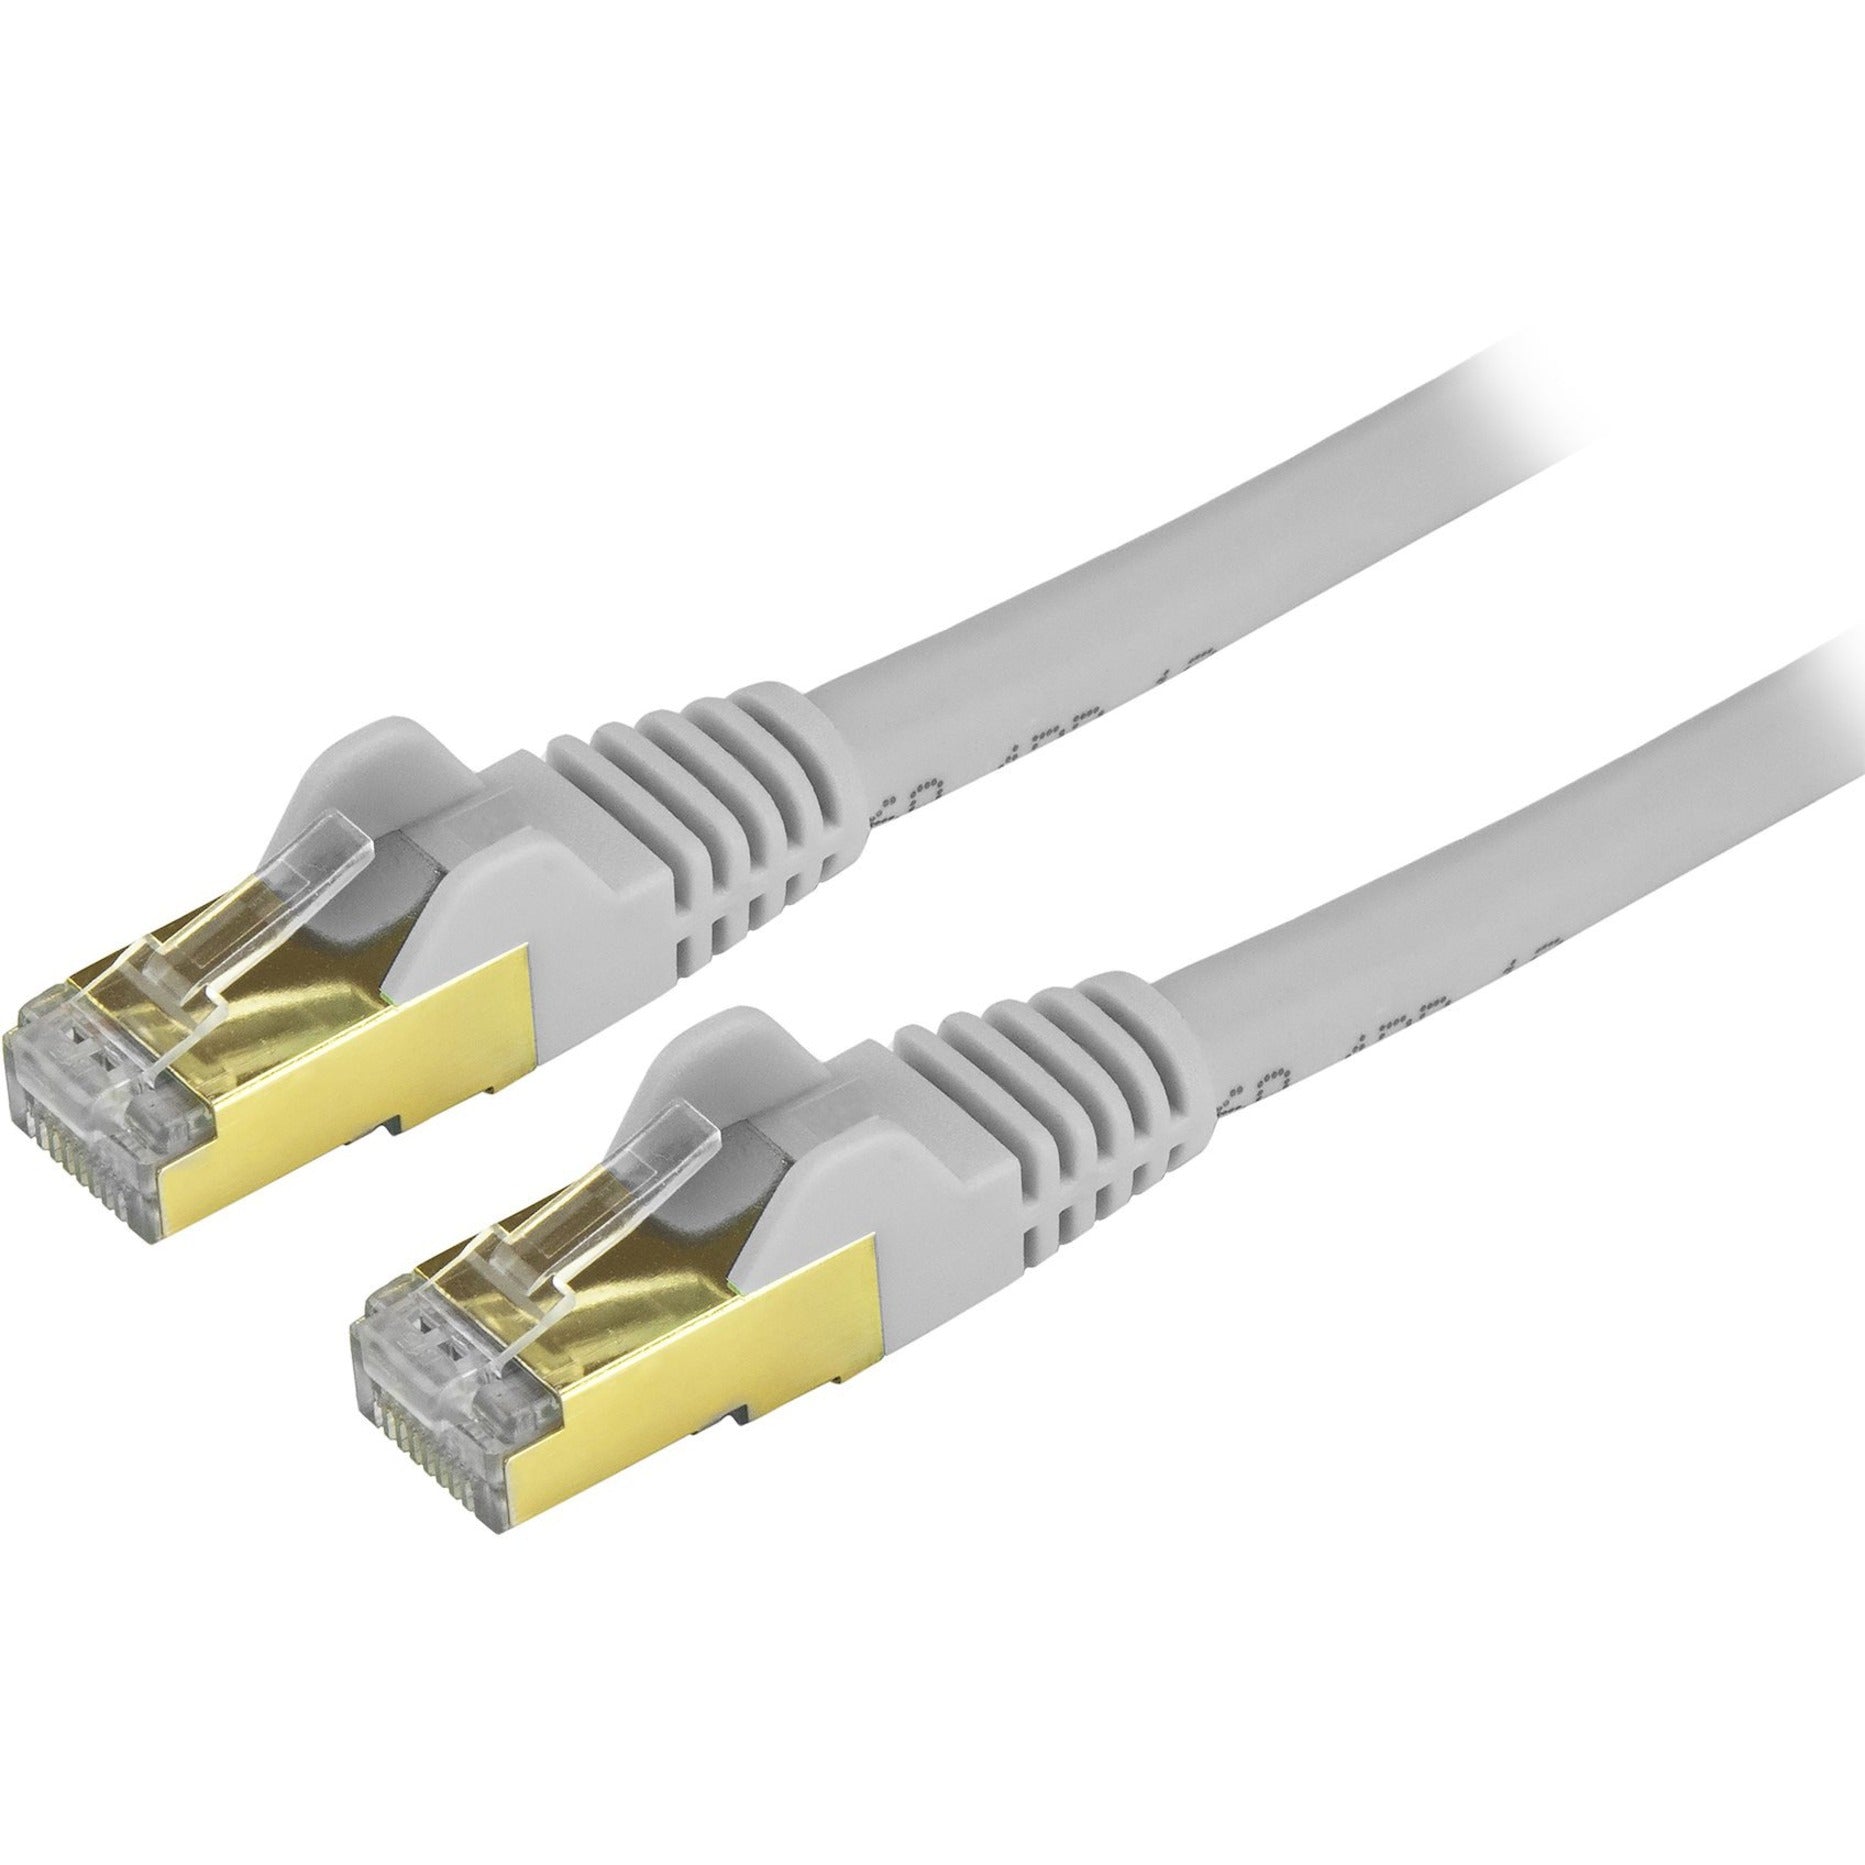 Startech.com C6ASPAT2GR Cat6a Ethernet Câble Patch - Blindé (STP) - 2 pieds Gris Snagless RJ45 Cordon Ethernet